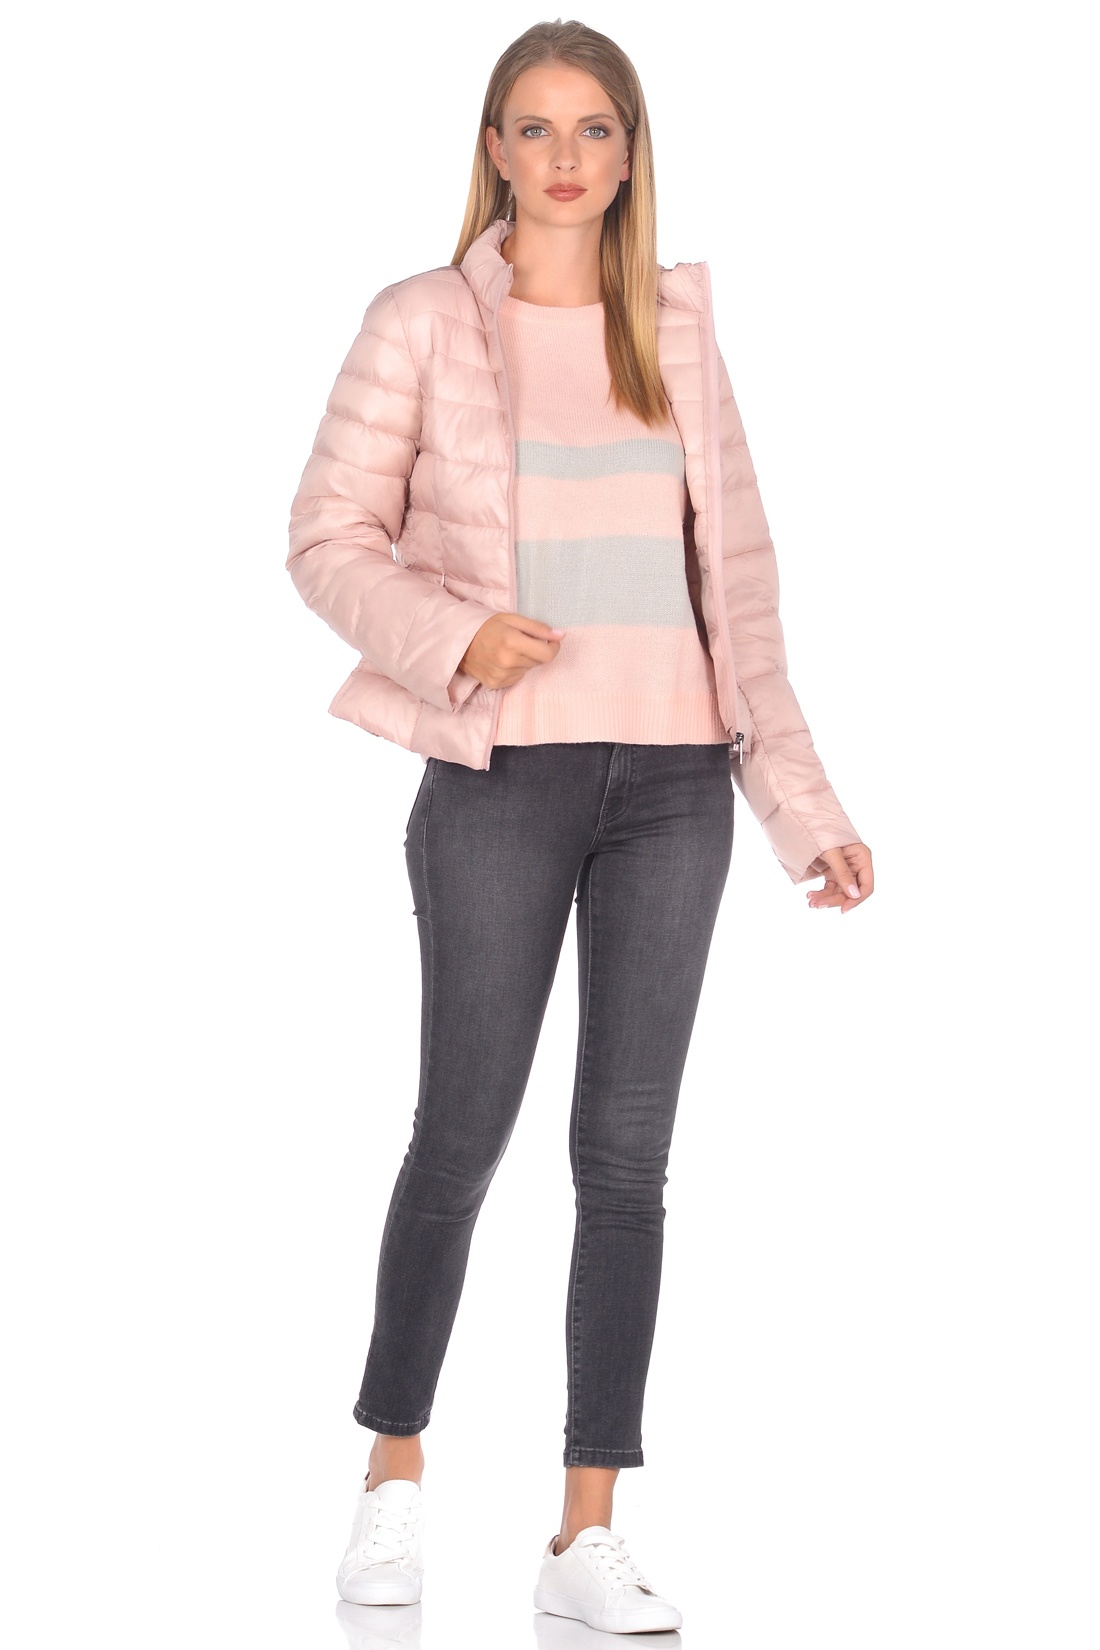 Приталенная куртка с продольной простёжкой (арт. baon B038599), размер XS, цвет розовый Приталенная куртка с продольной простёжкой (арт. baon B038599) - фото 4